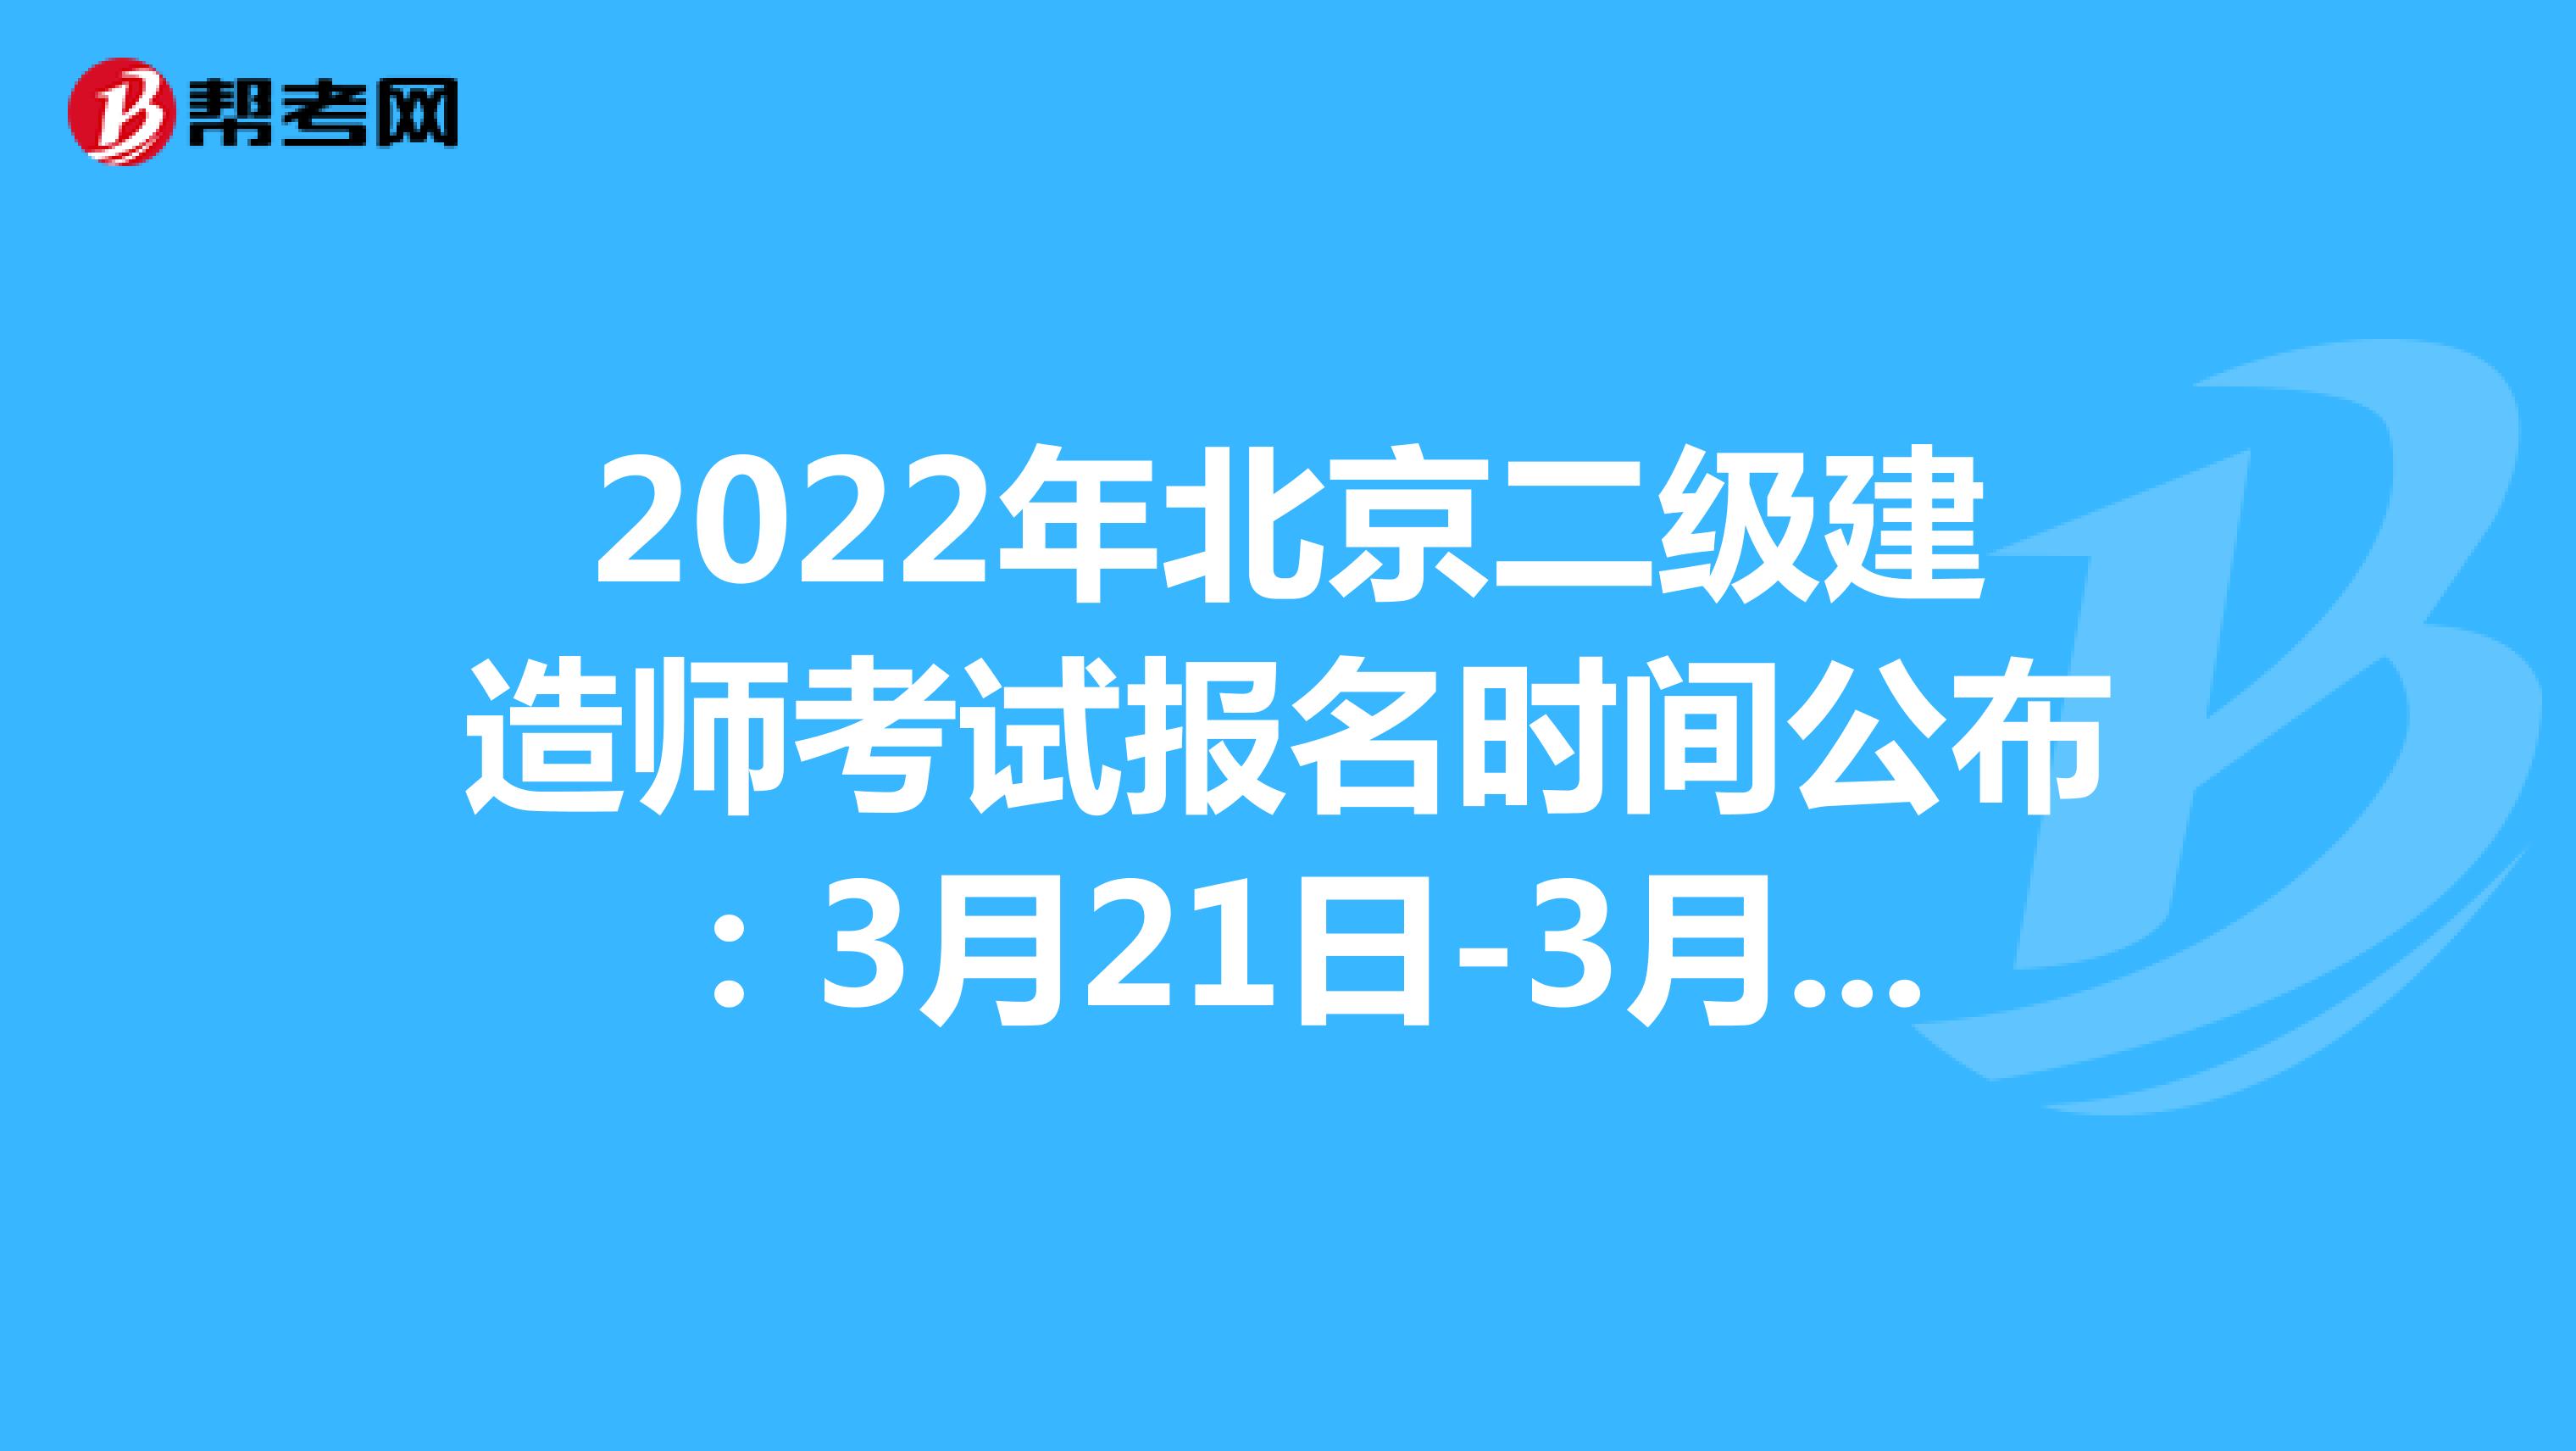 2022年北京二級建造師考試報名時間公布：3月21日-3月25日